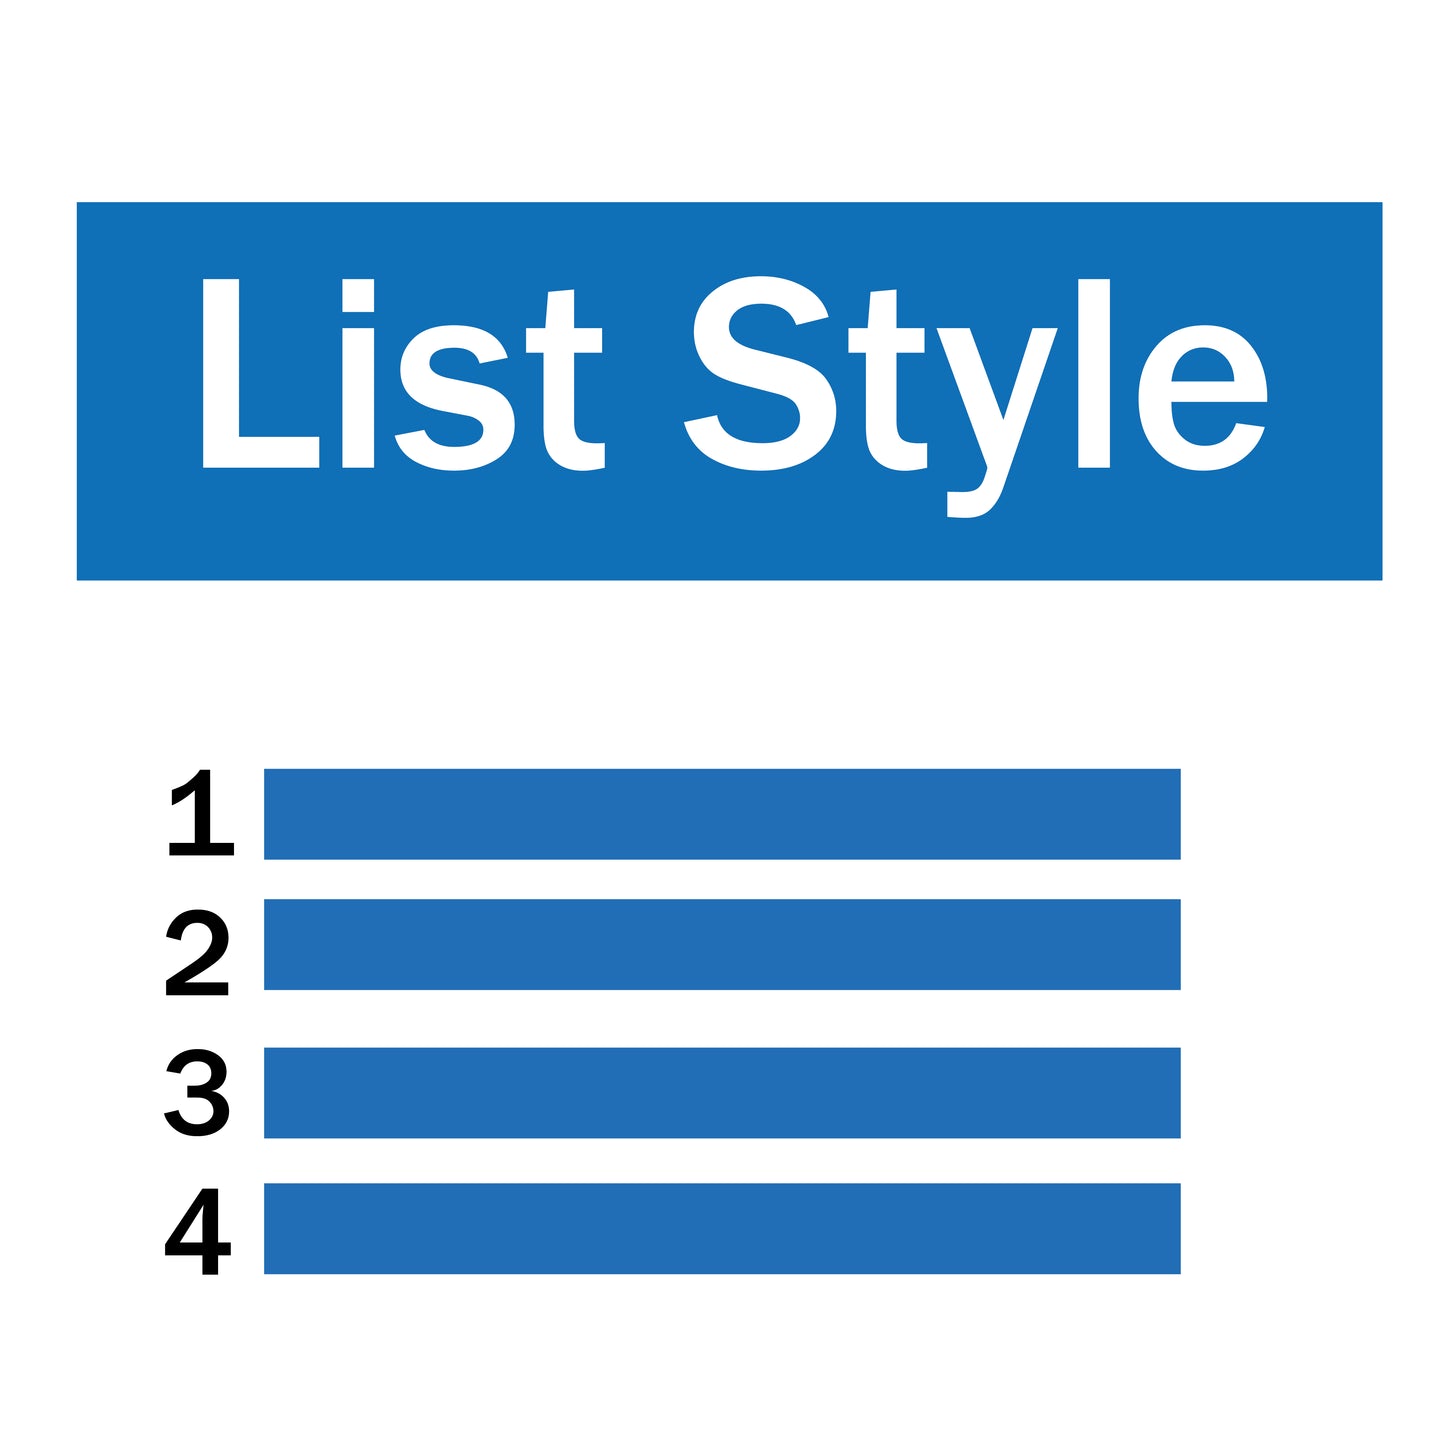 List style variants display